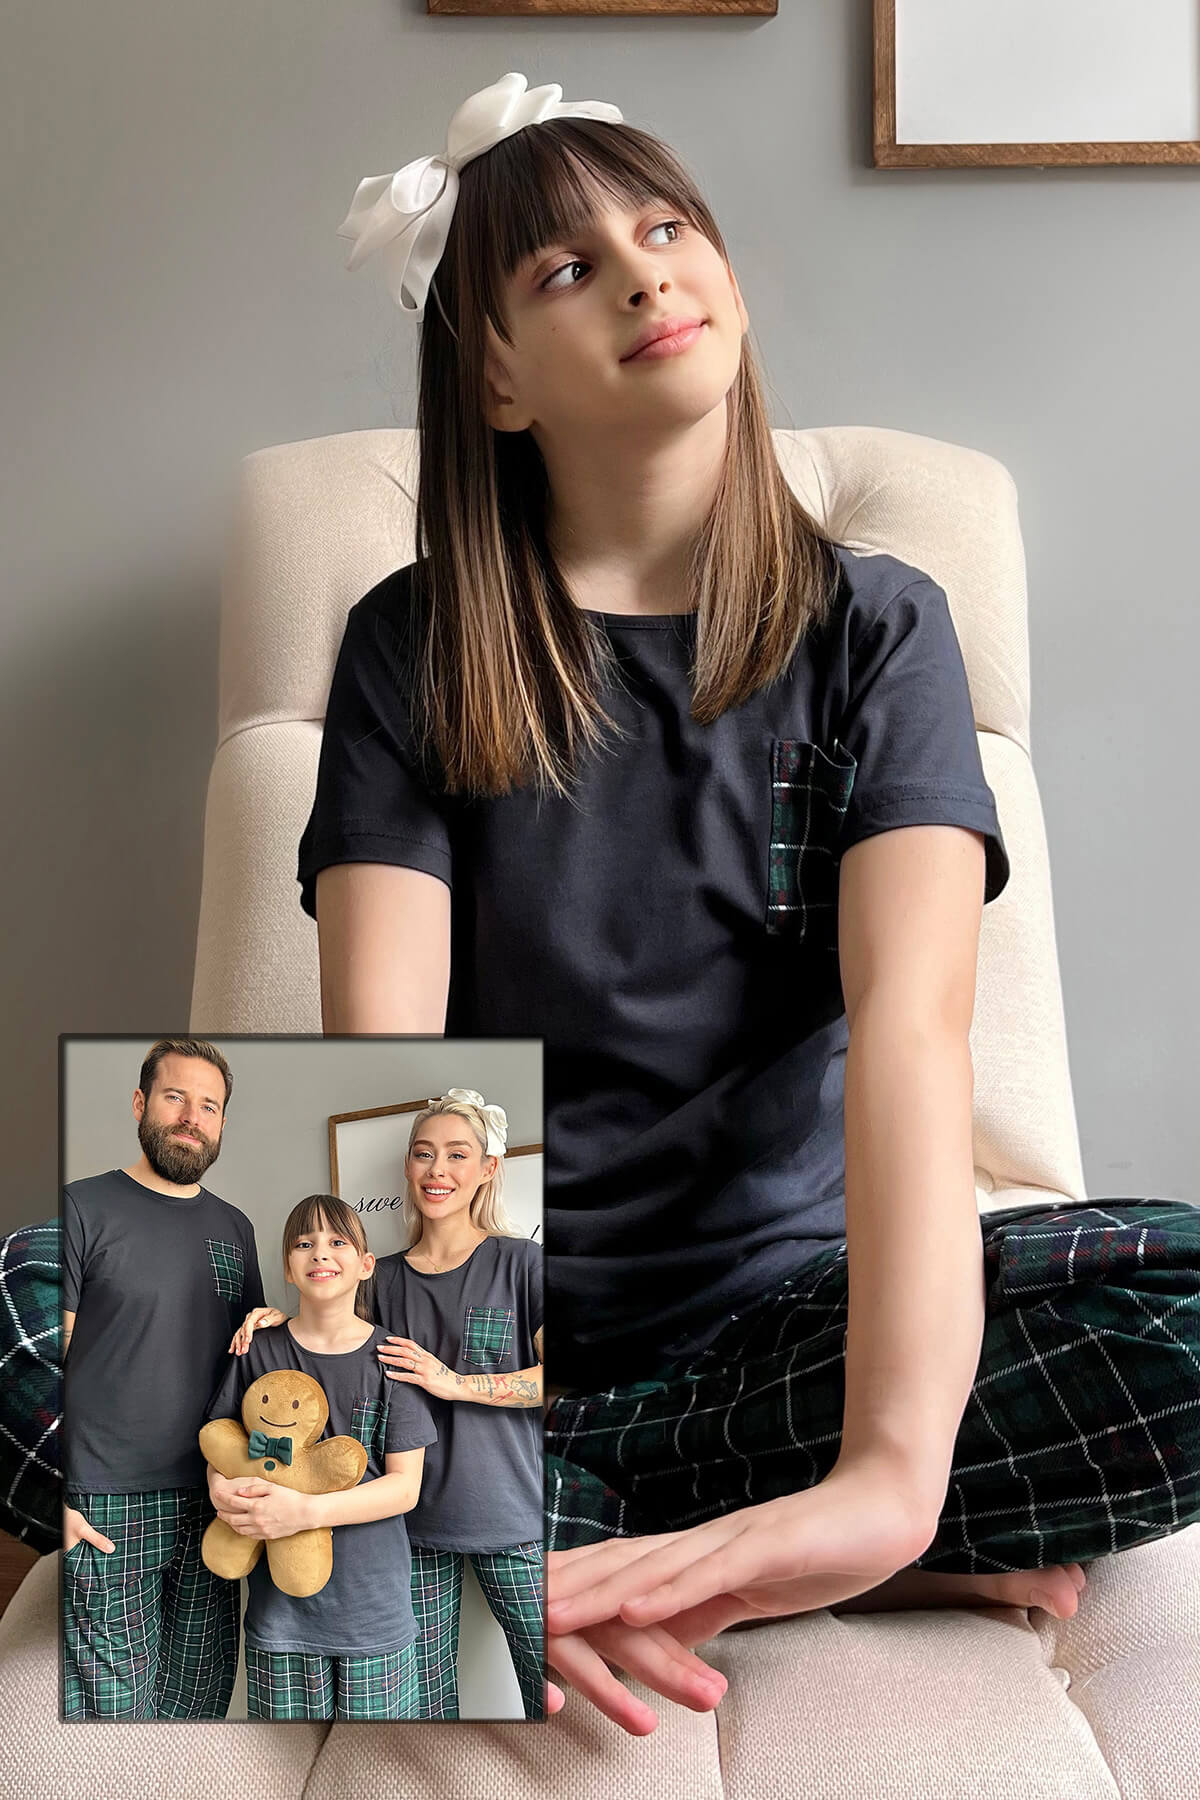 Lacivert Cep Kısa Kol Anne Kız Aile Pijaması - Çocuk Takımı - 1